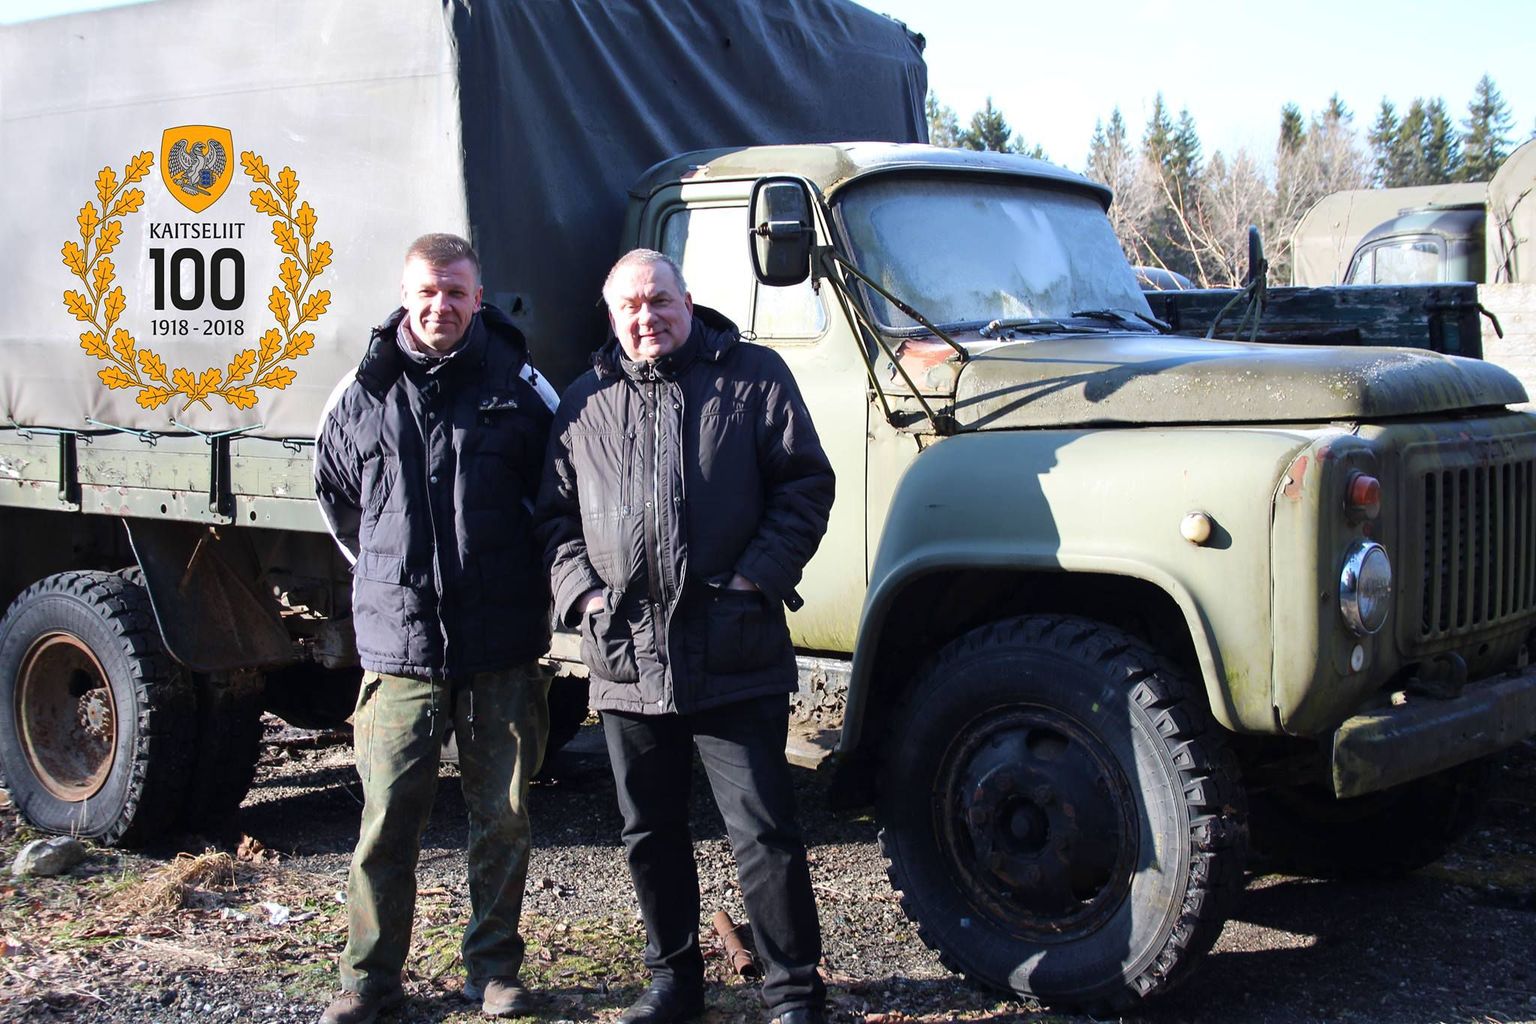 Saaremaa Sõjavara Seltsi eestvedaja Margus Sinimets ja Aivar Riisalu vene veoautoga Gaz 53, millest tehakse ajaloolise soomusauto teisik.